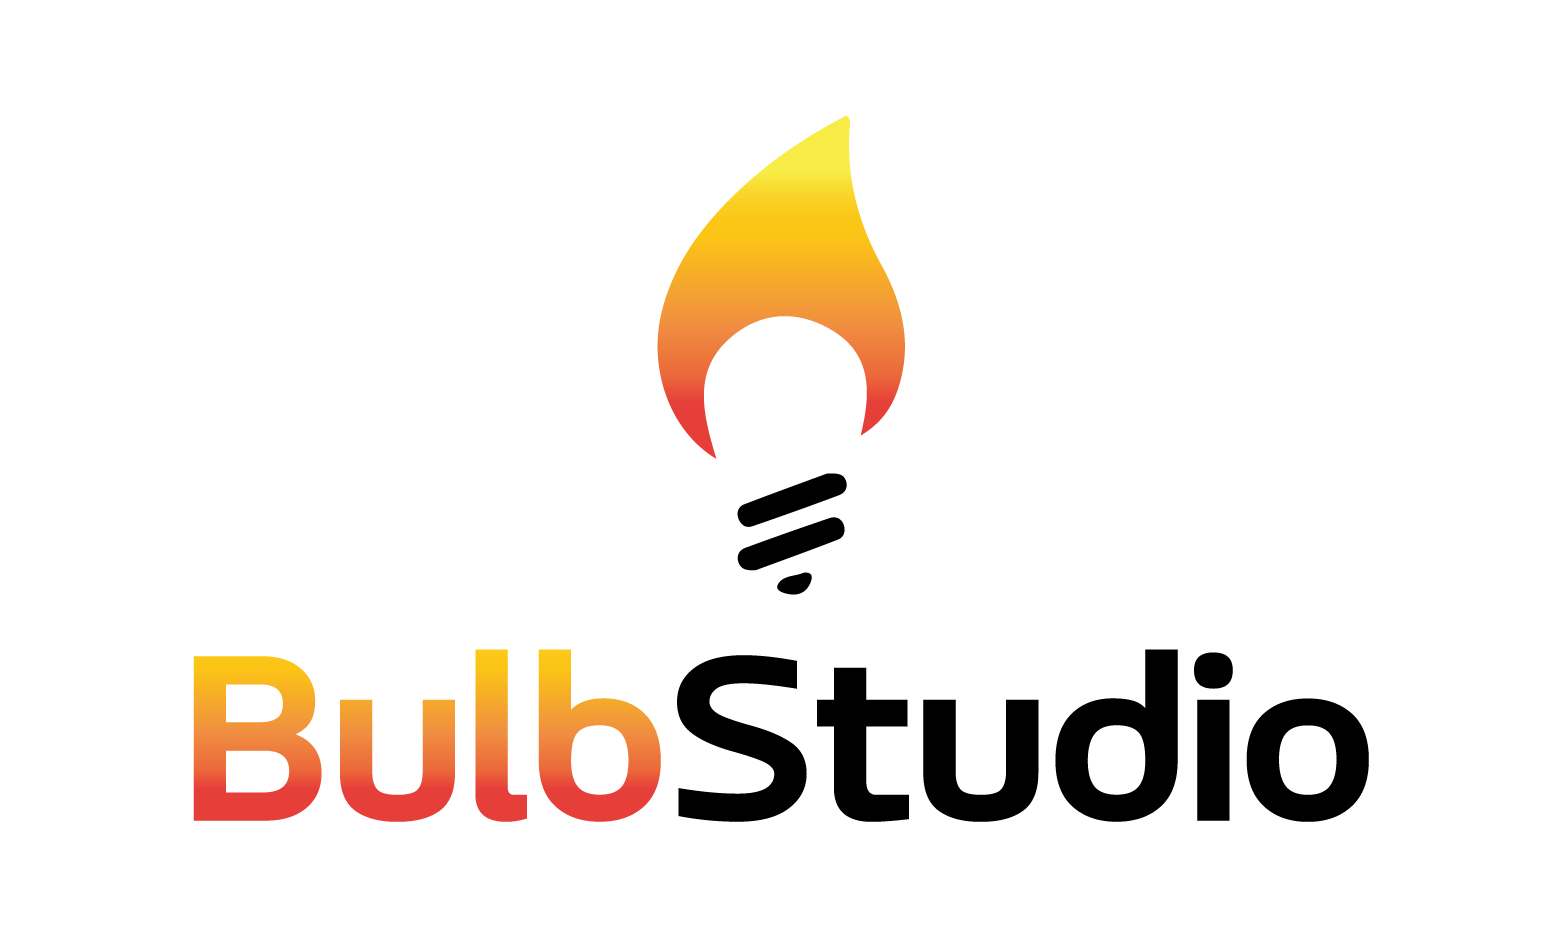 BulbStudio.com - Creative brandable domain for sale